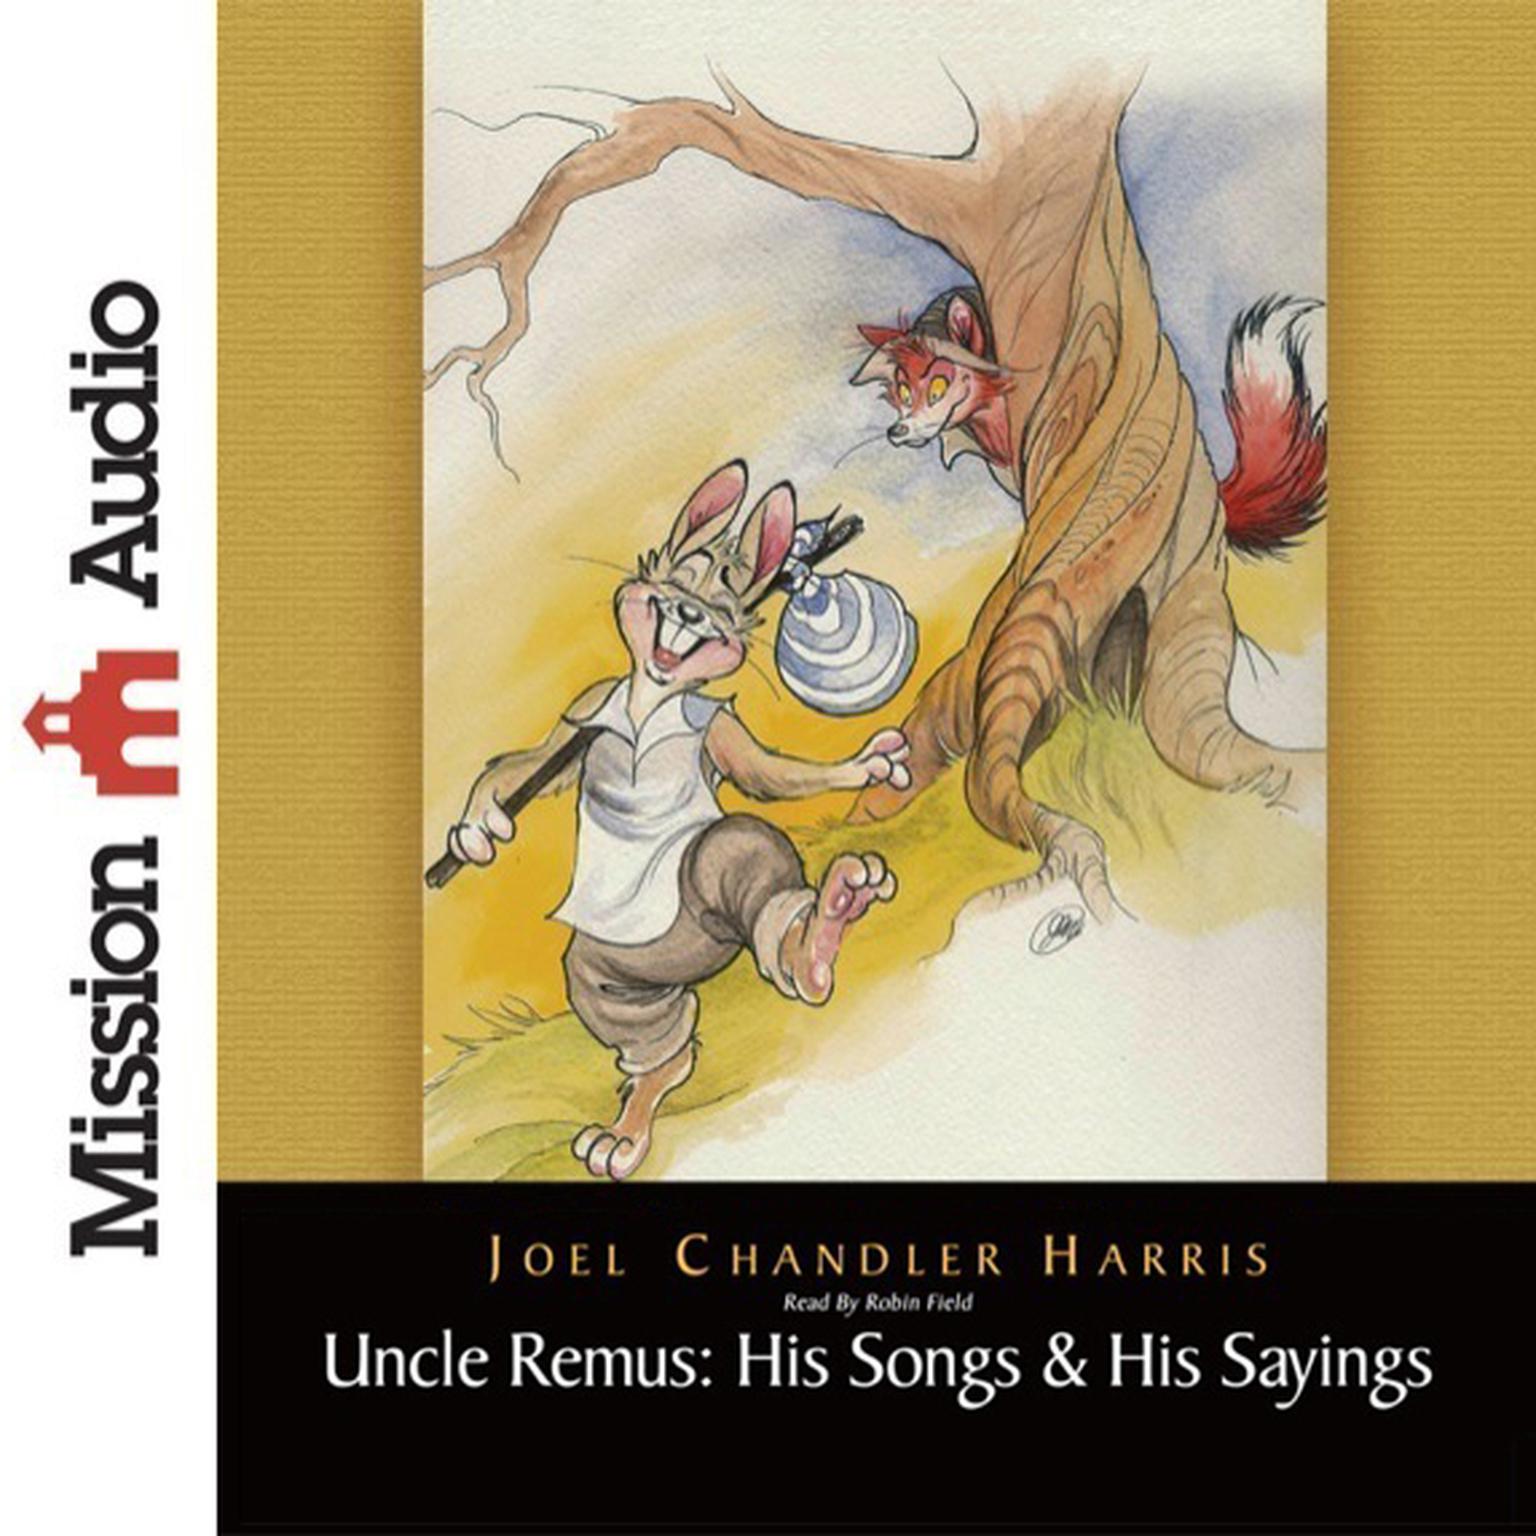 Uncle Remus: His Songs & His Sayings: His Songs and His Sayings Audiobook, by Joel Chandler Harris